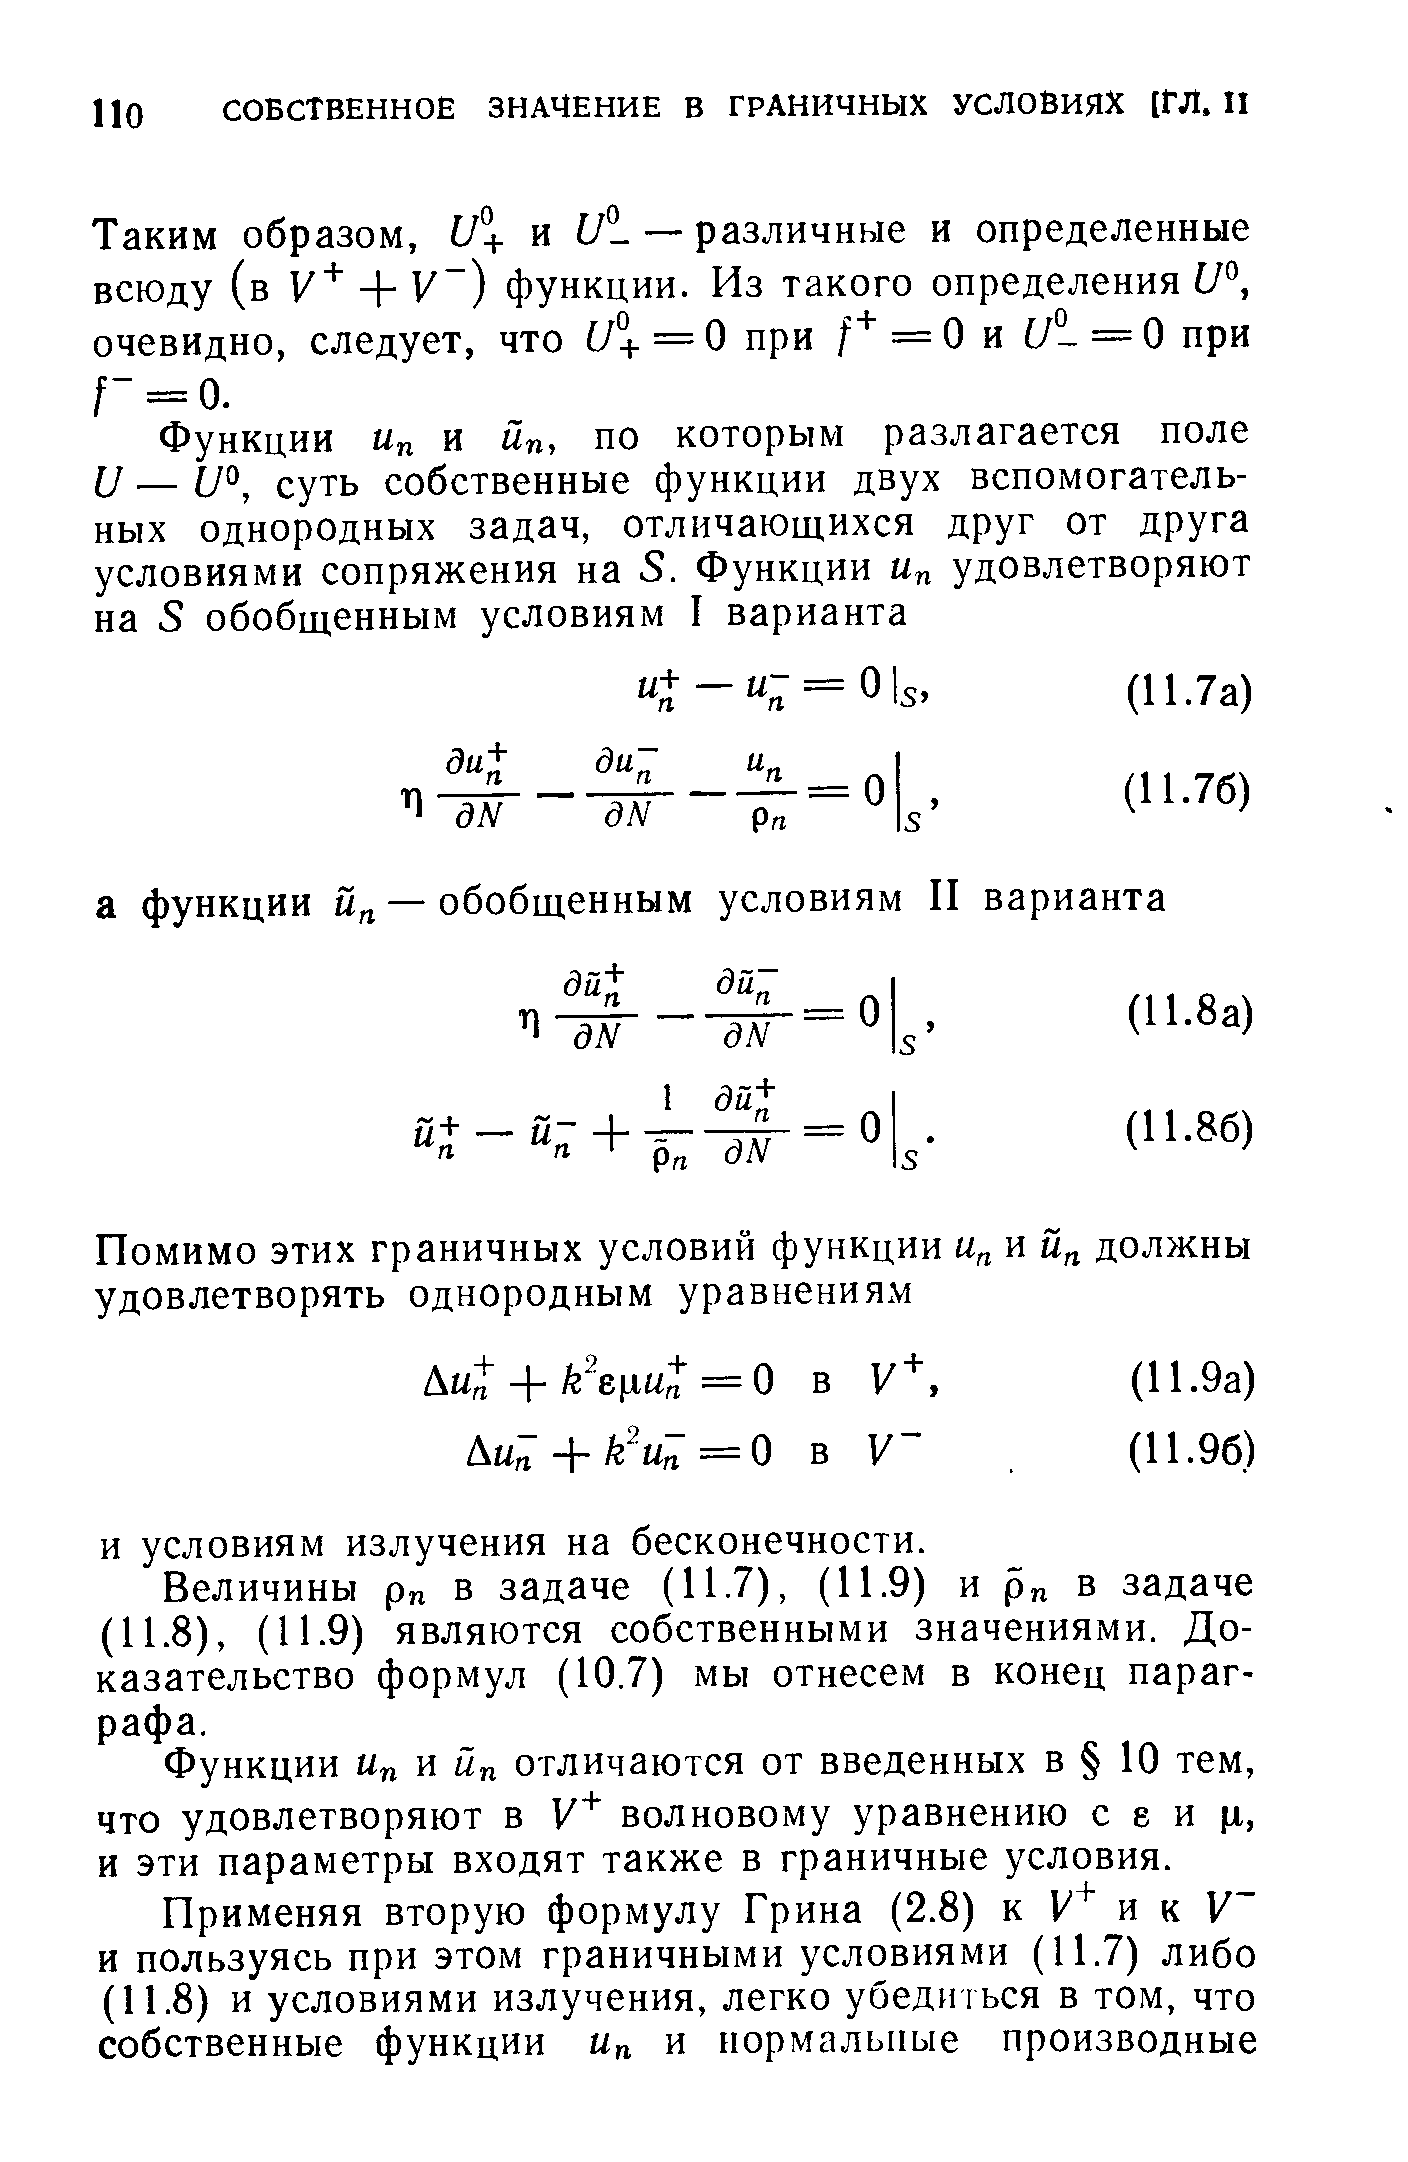 Функции м и йп отличаются от введенных в 10 тем, что удовлетворяют в волновому уравнению с е и (х, и эти параметры входят также в граничные условия.
